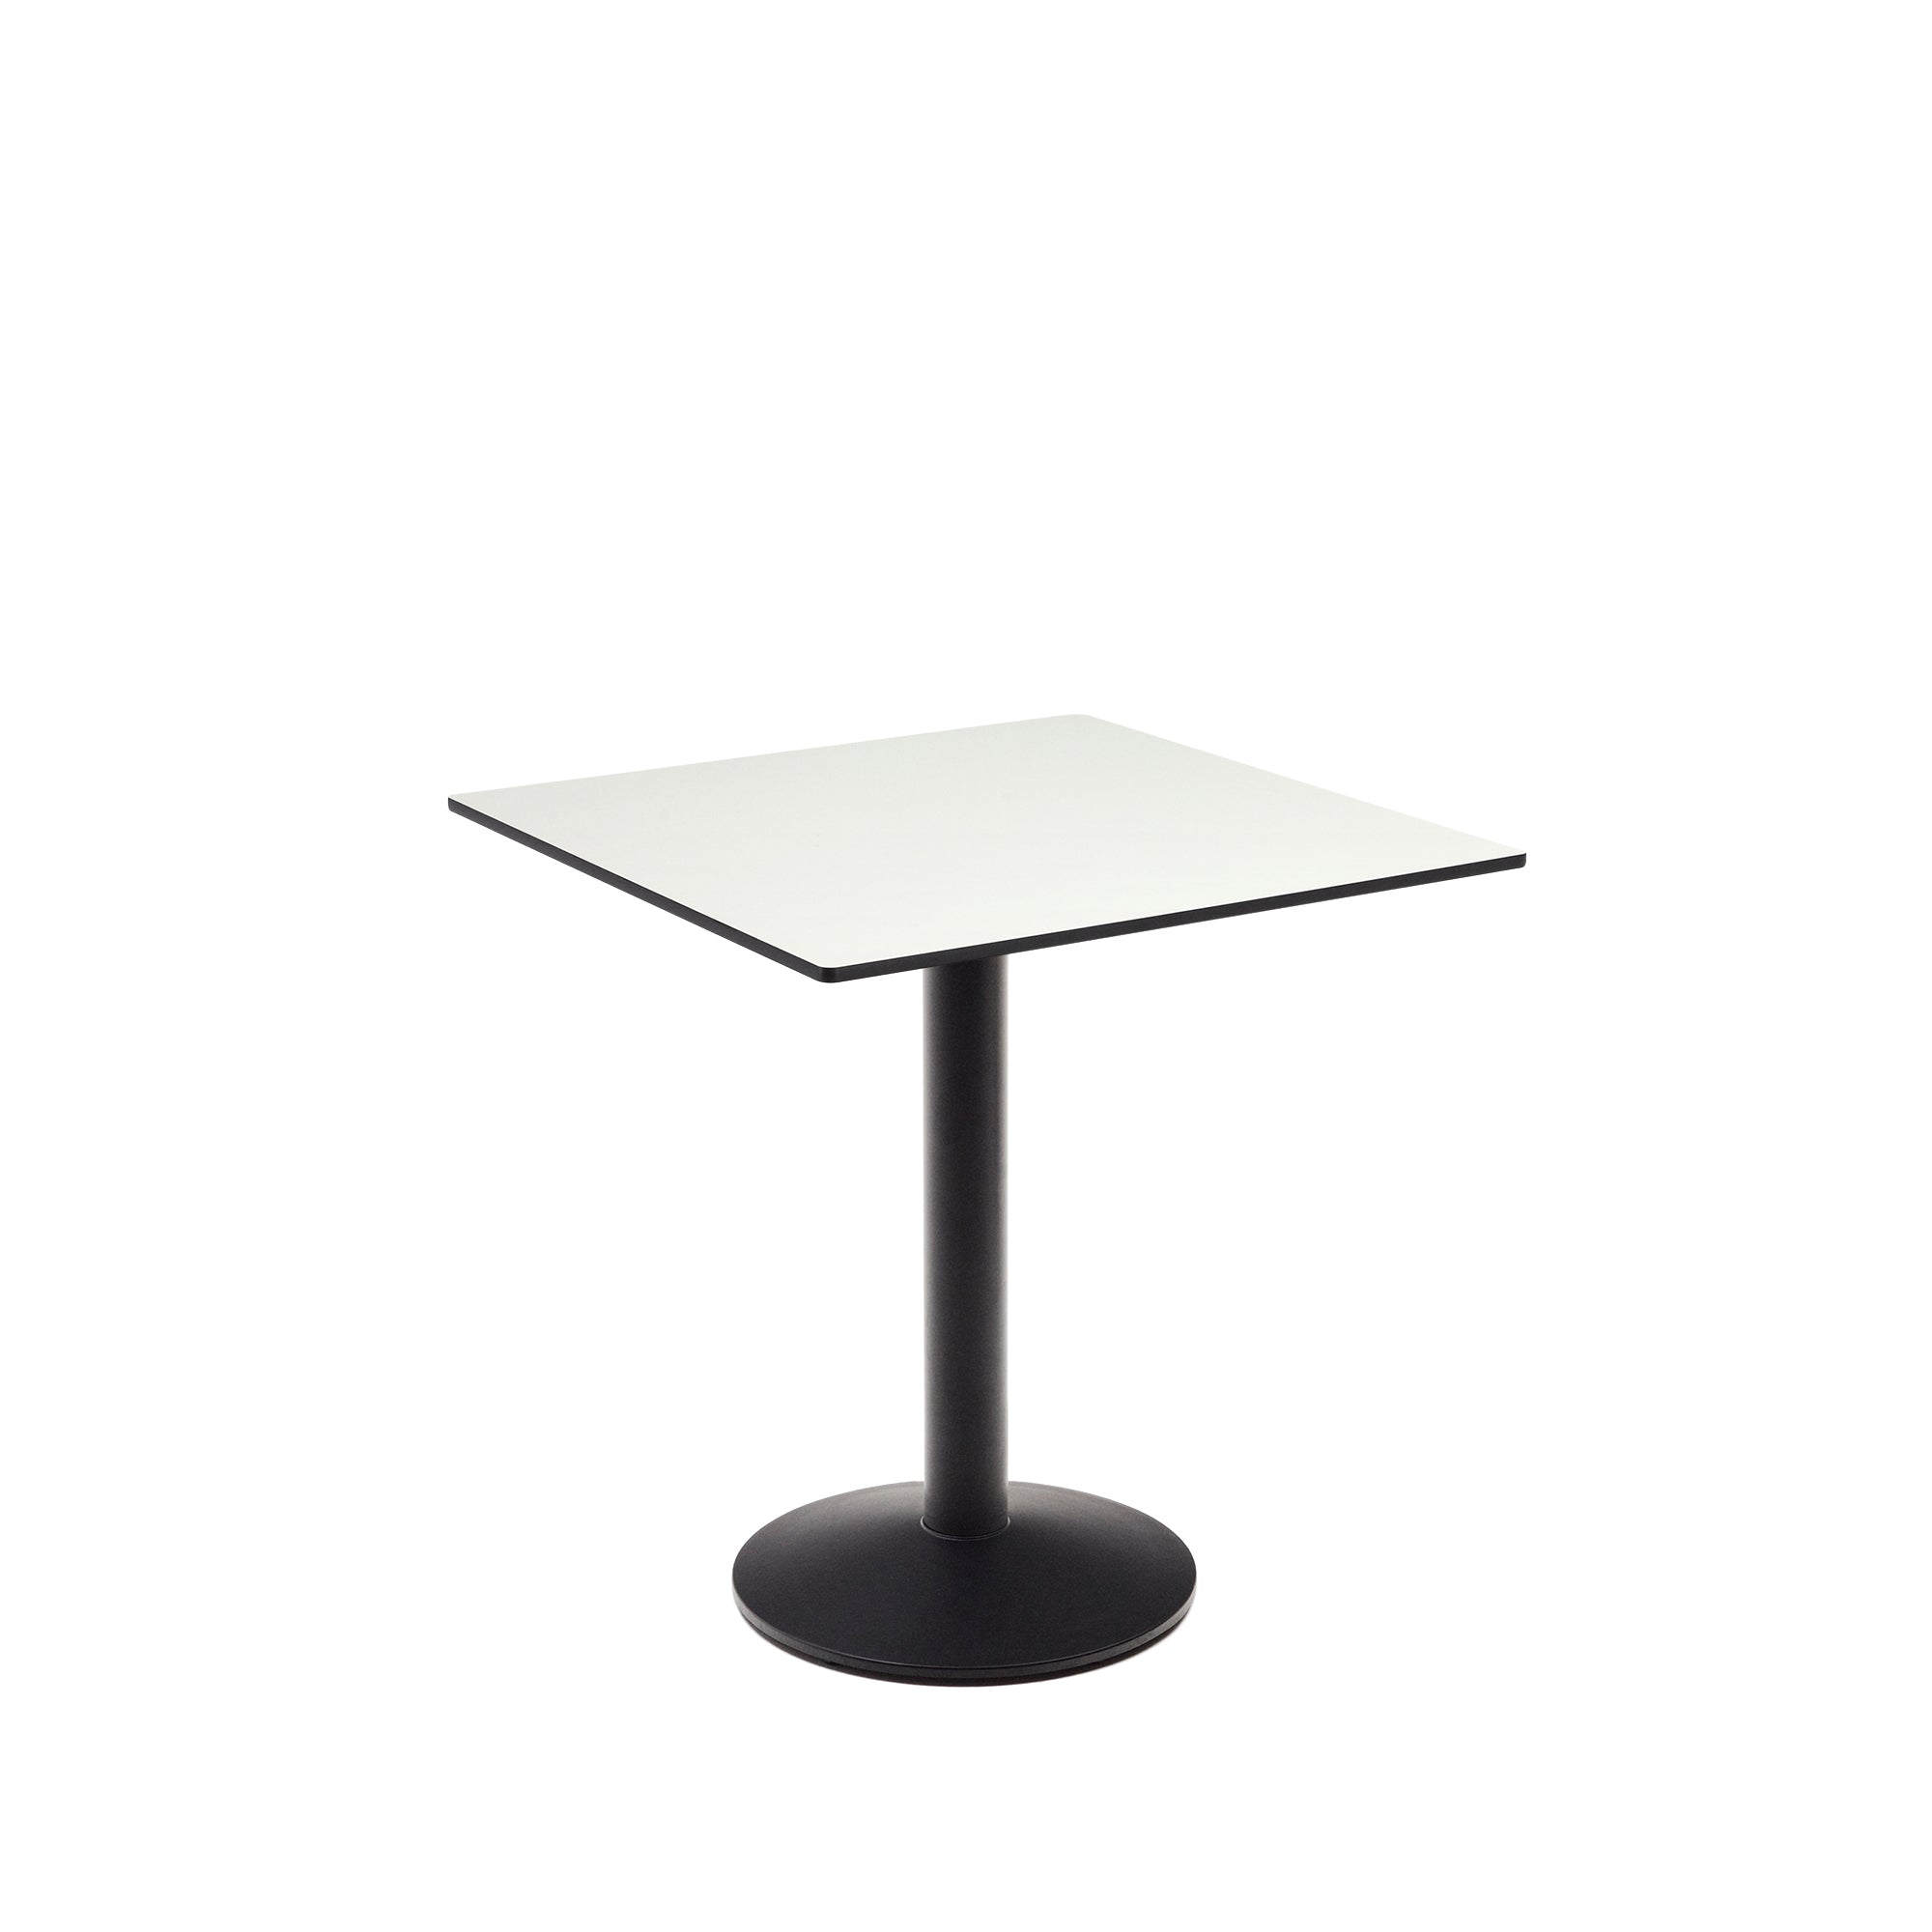 Esilda kültéri asztal fehér színben, fekete festett fémlábbal, 70 x 70 x 70 cm, 70 x 70 cm